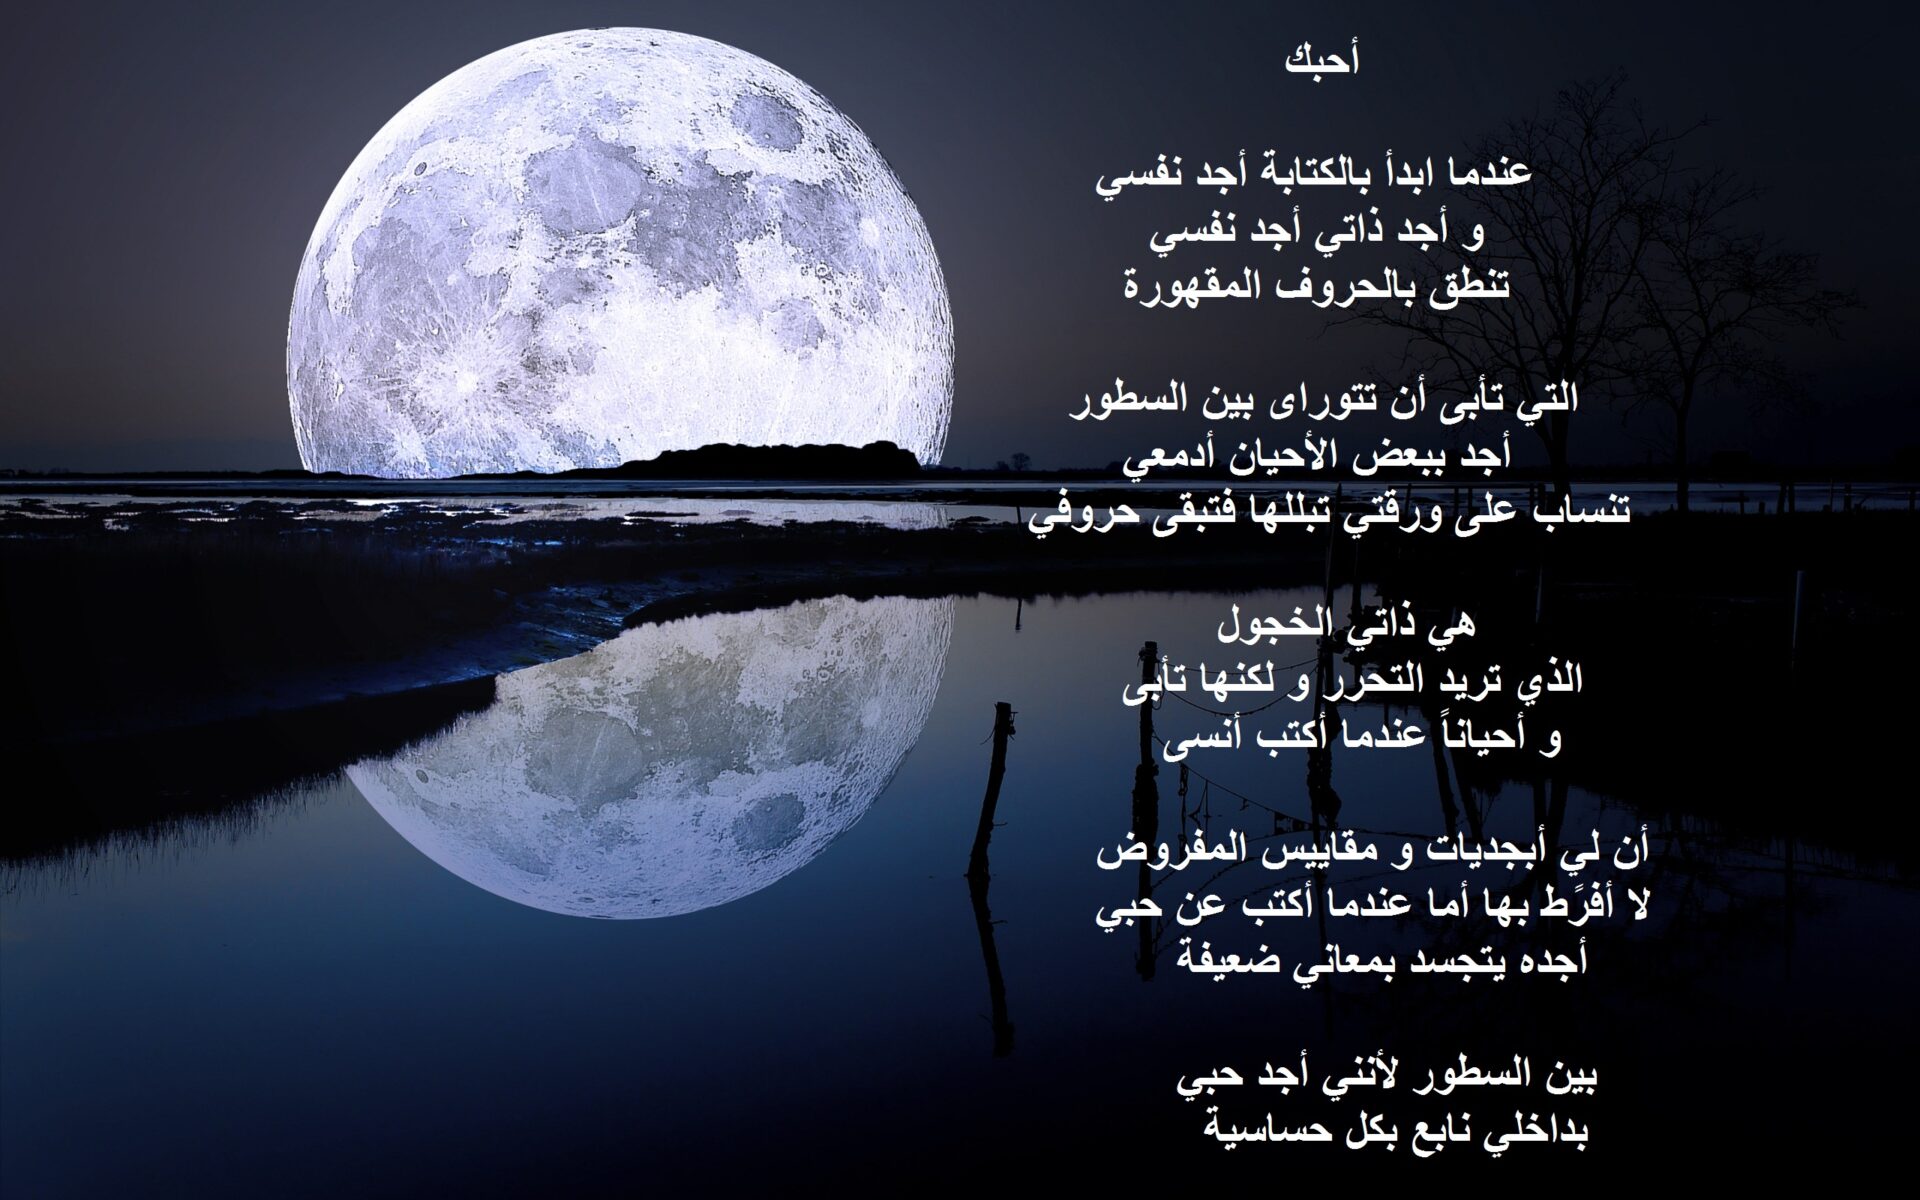 خلفية لمنظر طبيعي للقمر مكتوب عليها قصيدة حب جميلة.